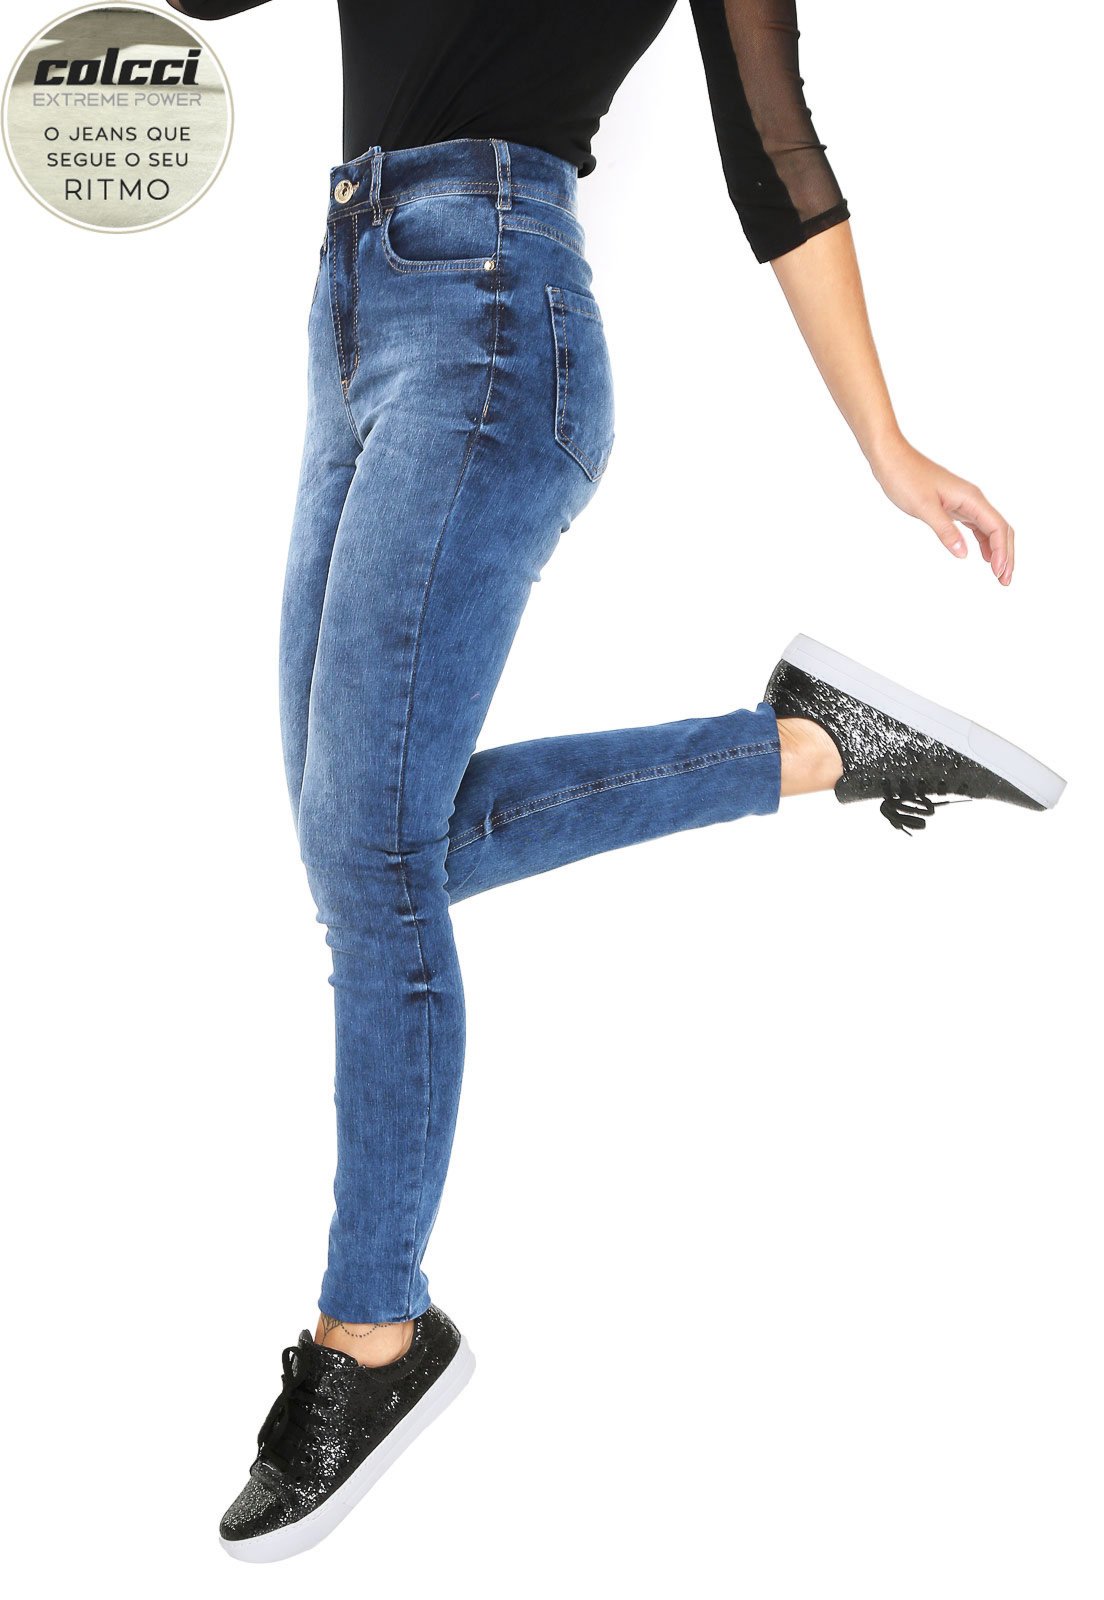 calça jeans colcci cintura alta